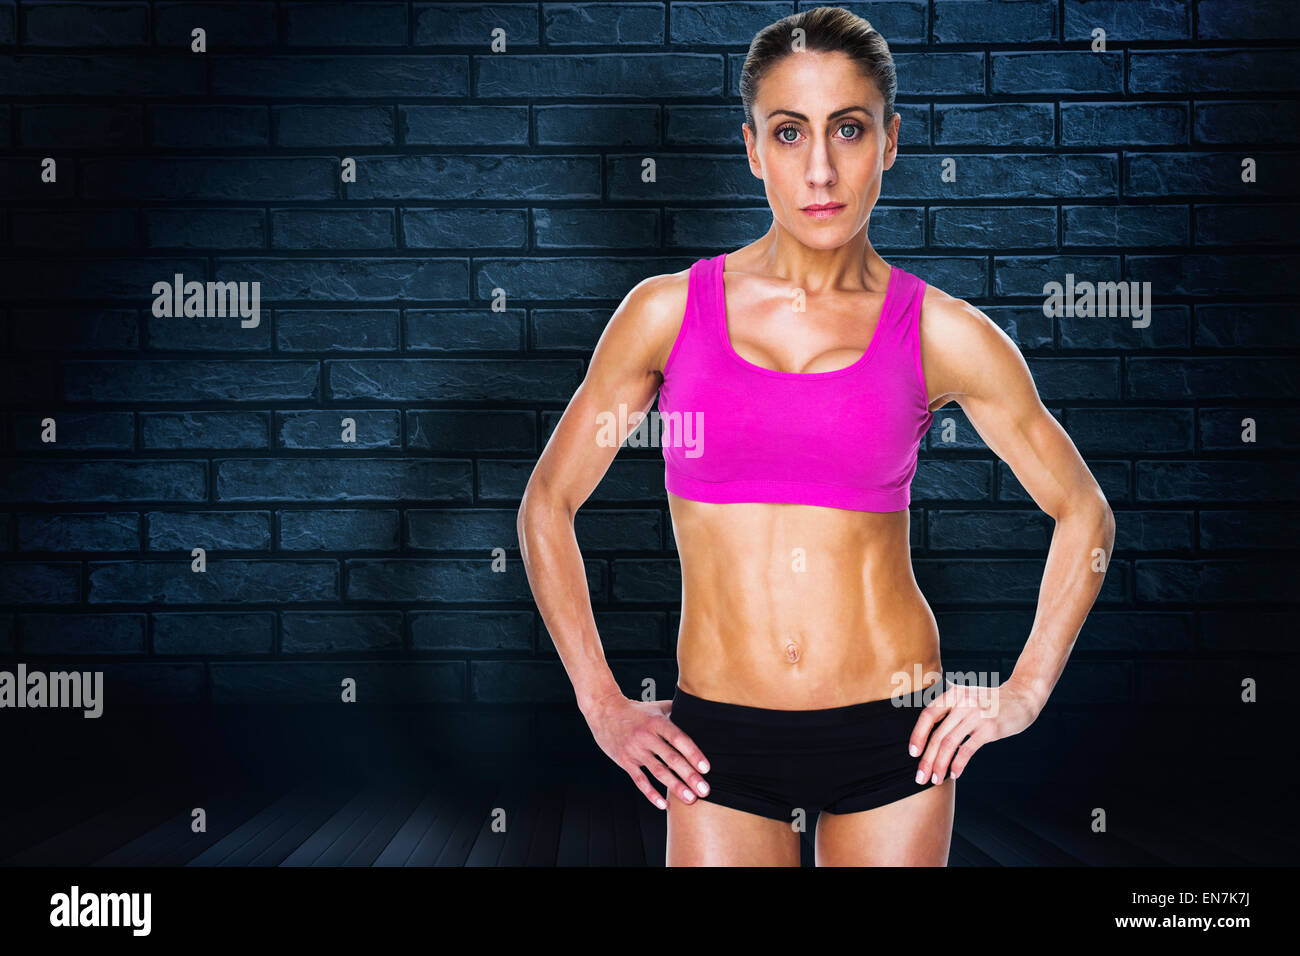 Immagine composita di bodybuilder femminile in posa con le mani sui fianchi guardando la fotocamera Foto Stock